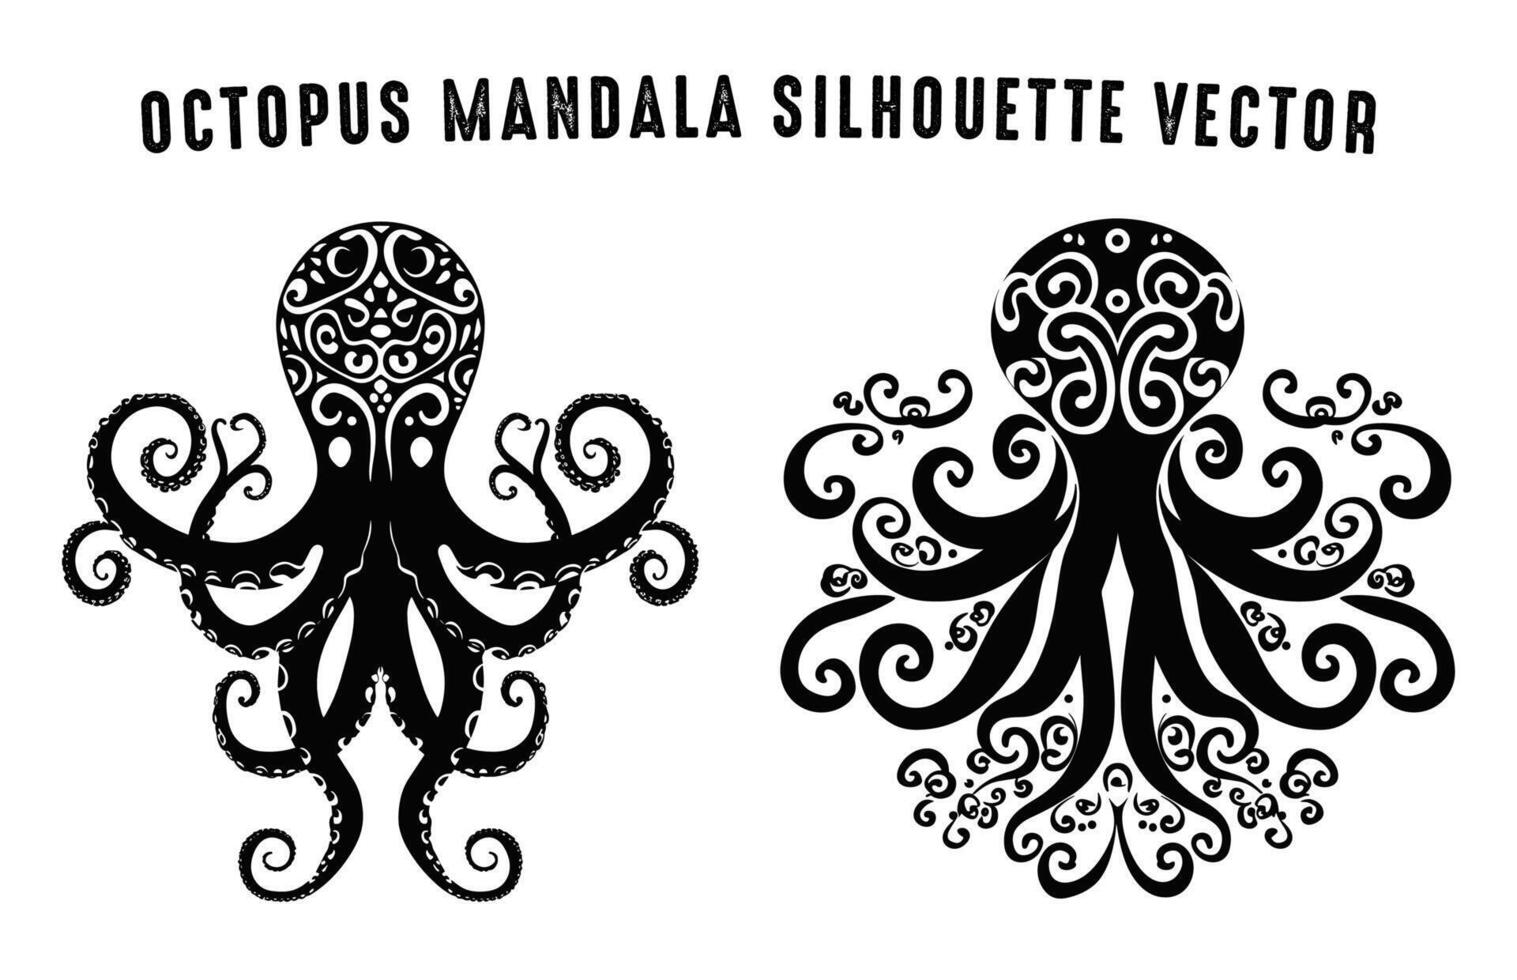 poulpe mandala silhouette clipart ensemble, poulpe noir silhouettes vecteur